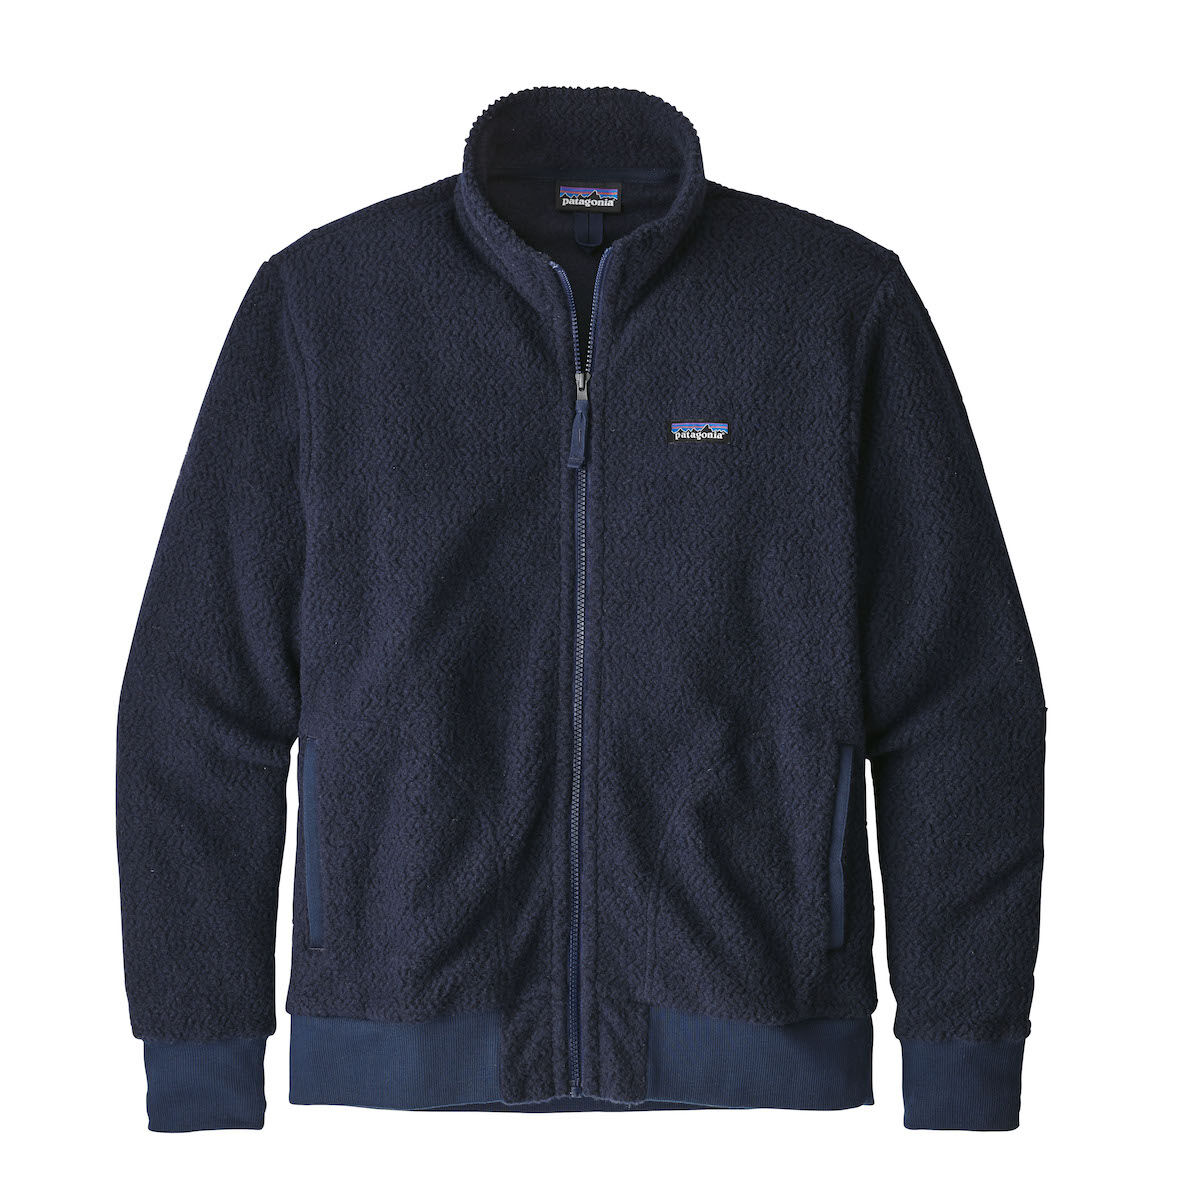 Patagonia Woolyester Fleece Jacket - Fleece jacket - Men's